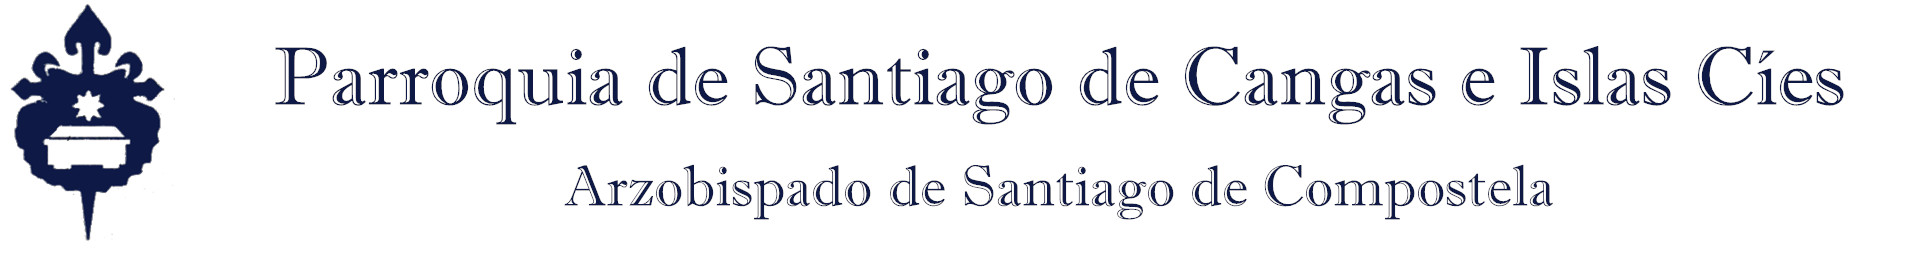 Santiago de Cangas